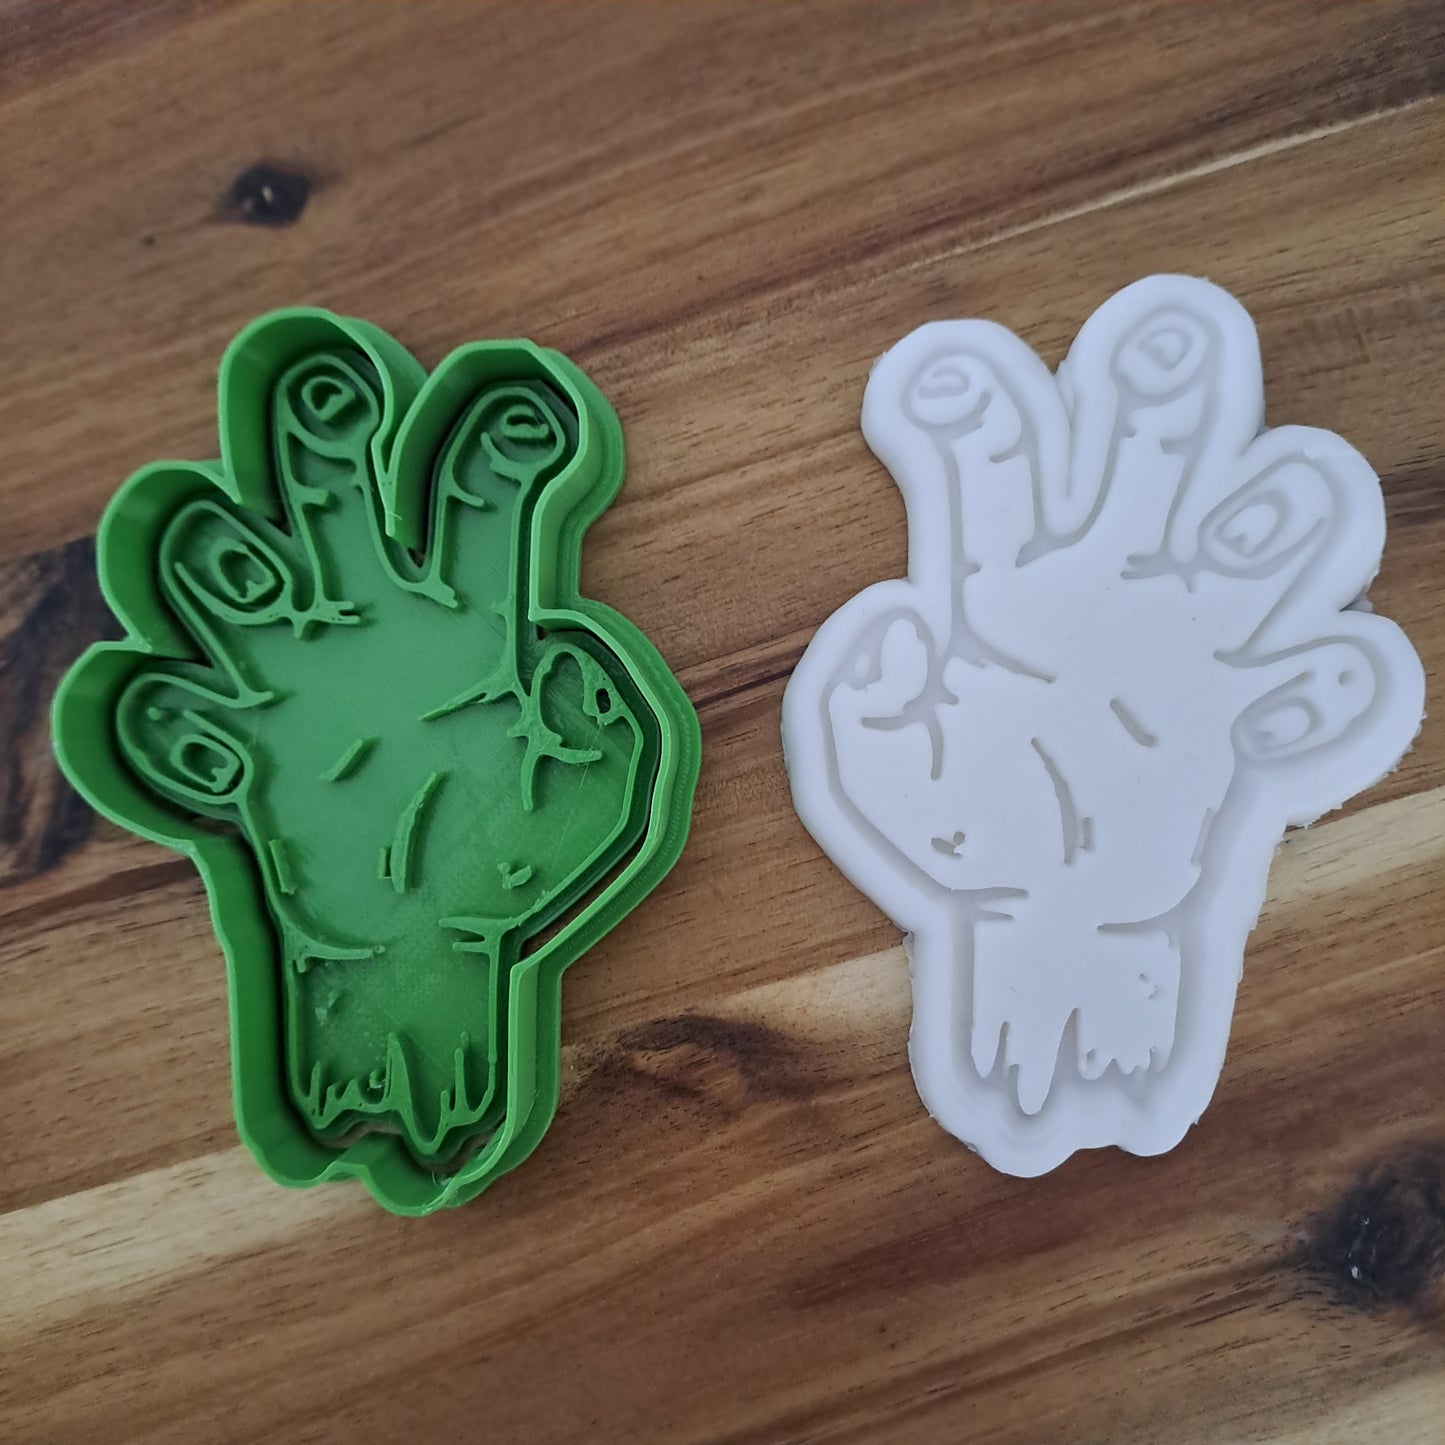 Braccio Zombie Mod.2 - Halloween  - Cookies cutter - Formina - Stampo per biscotti o decorazioni in pasta di zucchero per cake design